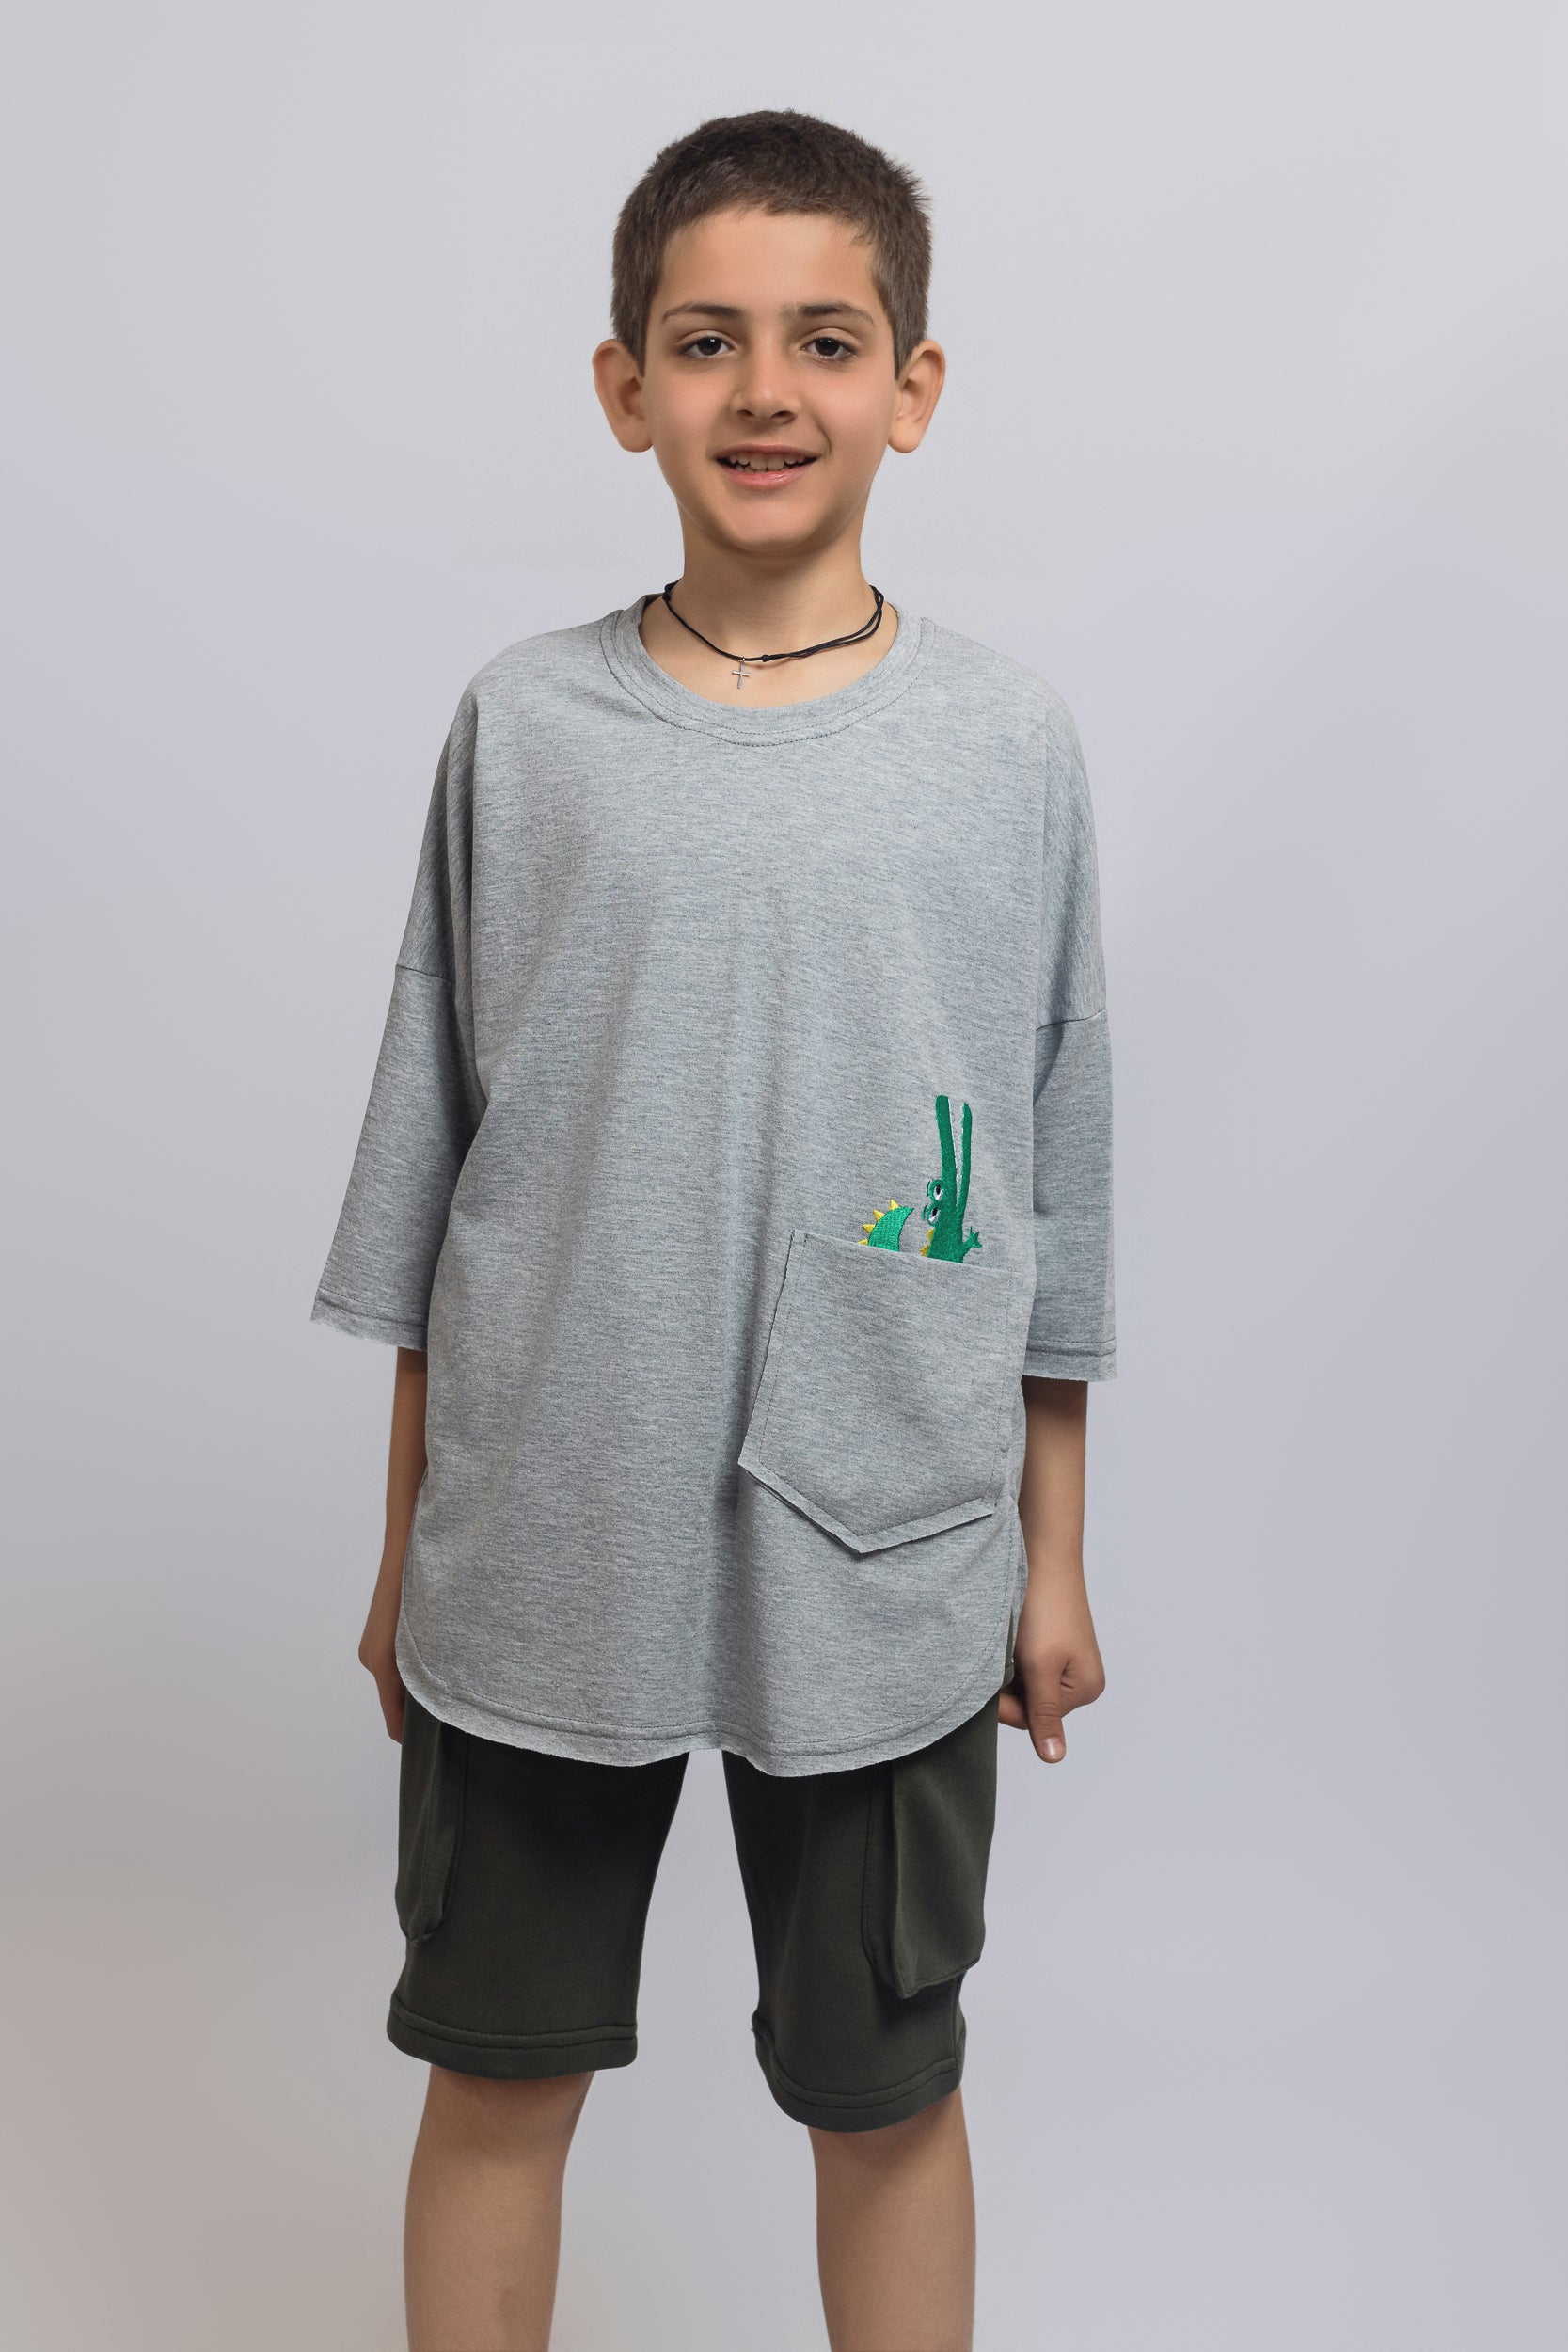 Crocodile T-shirt For Boys - Grey